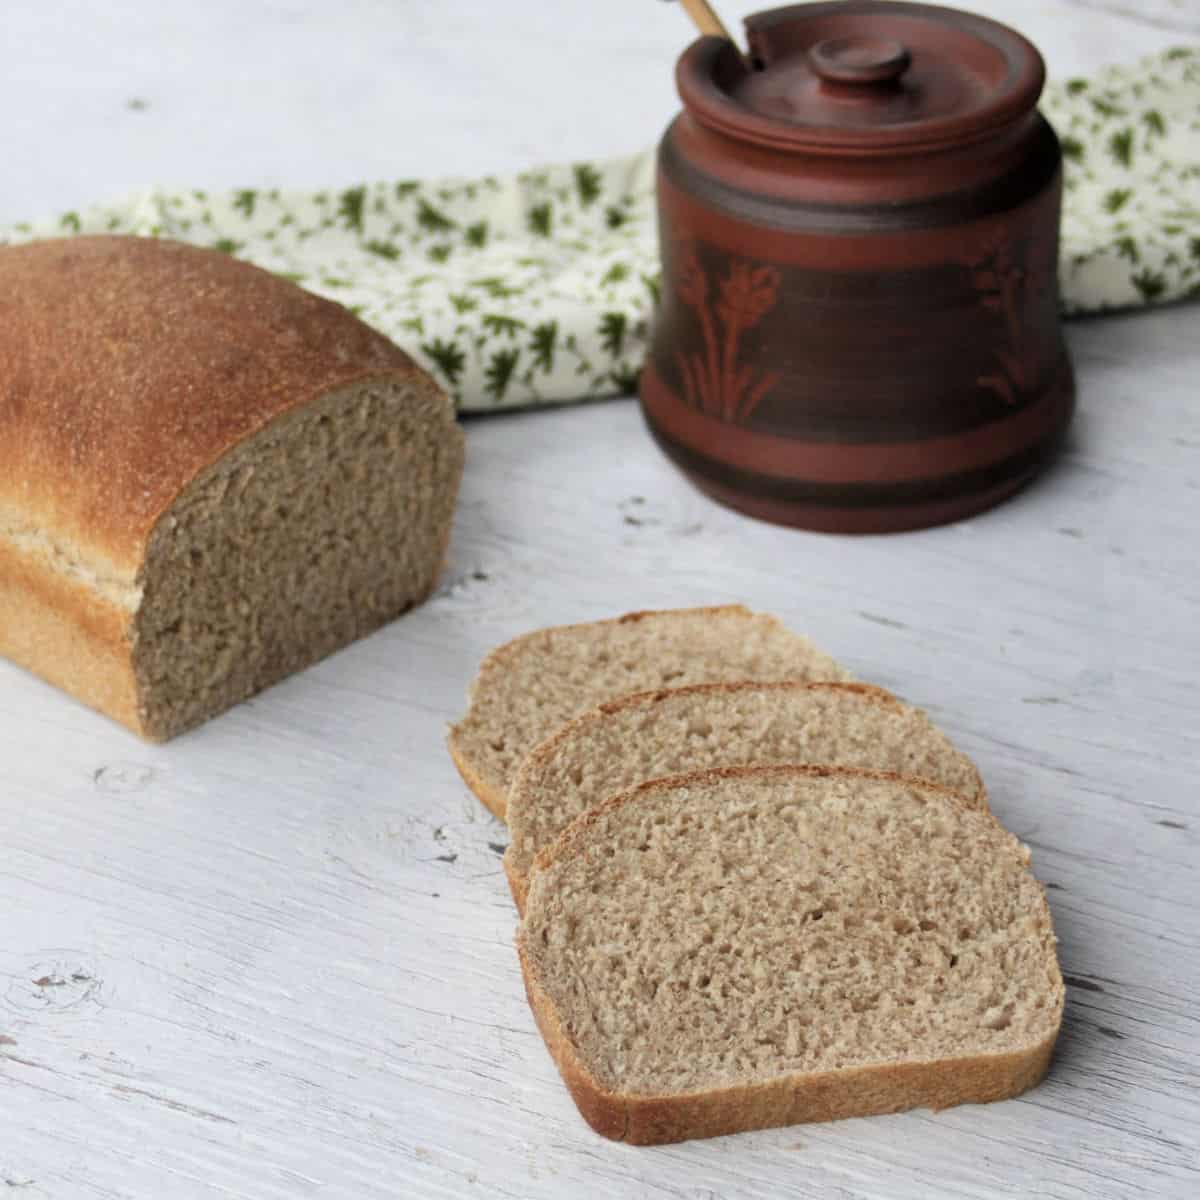 https://kneadygirl.com/wp-content/uploads/2020/05/honey-graham-bread-square-image.jpg